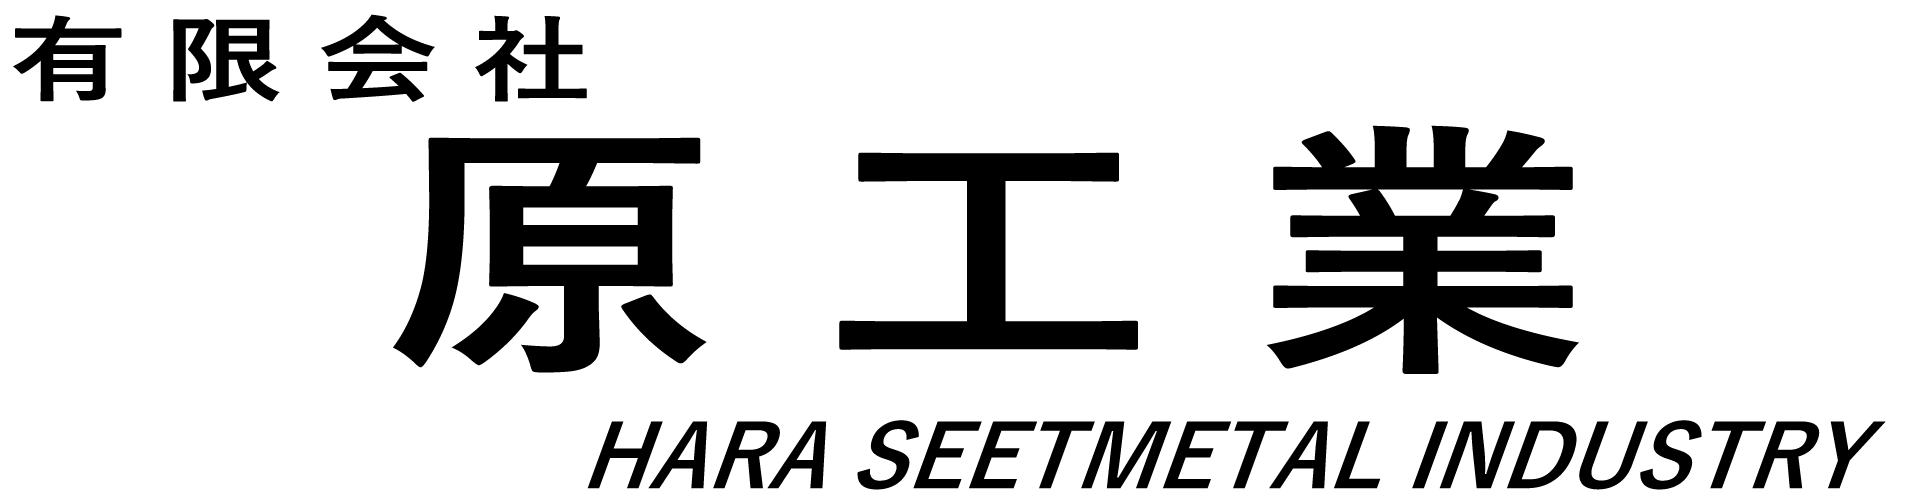 有限会社原工業のロゴ